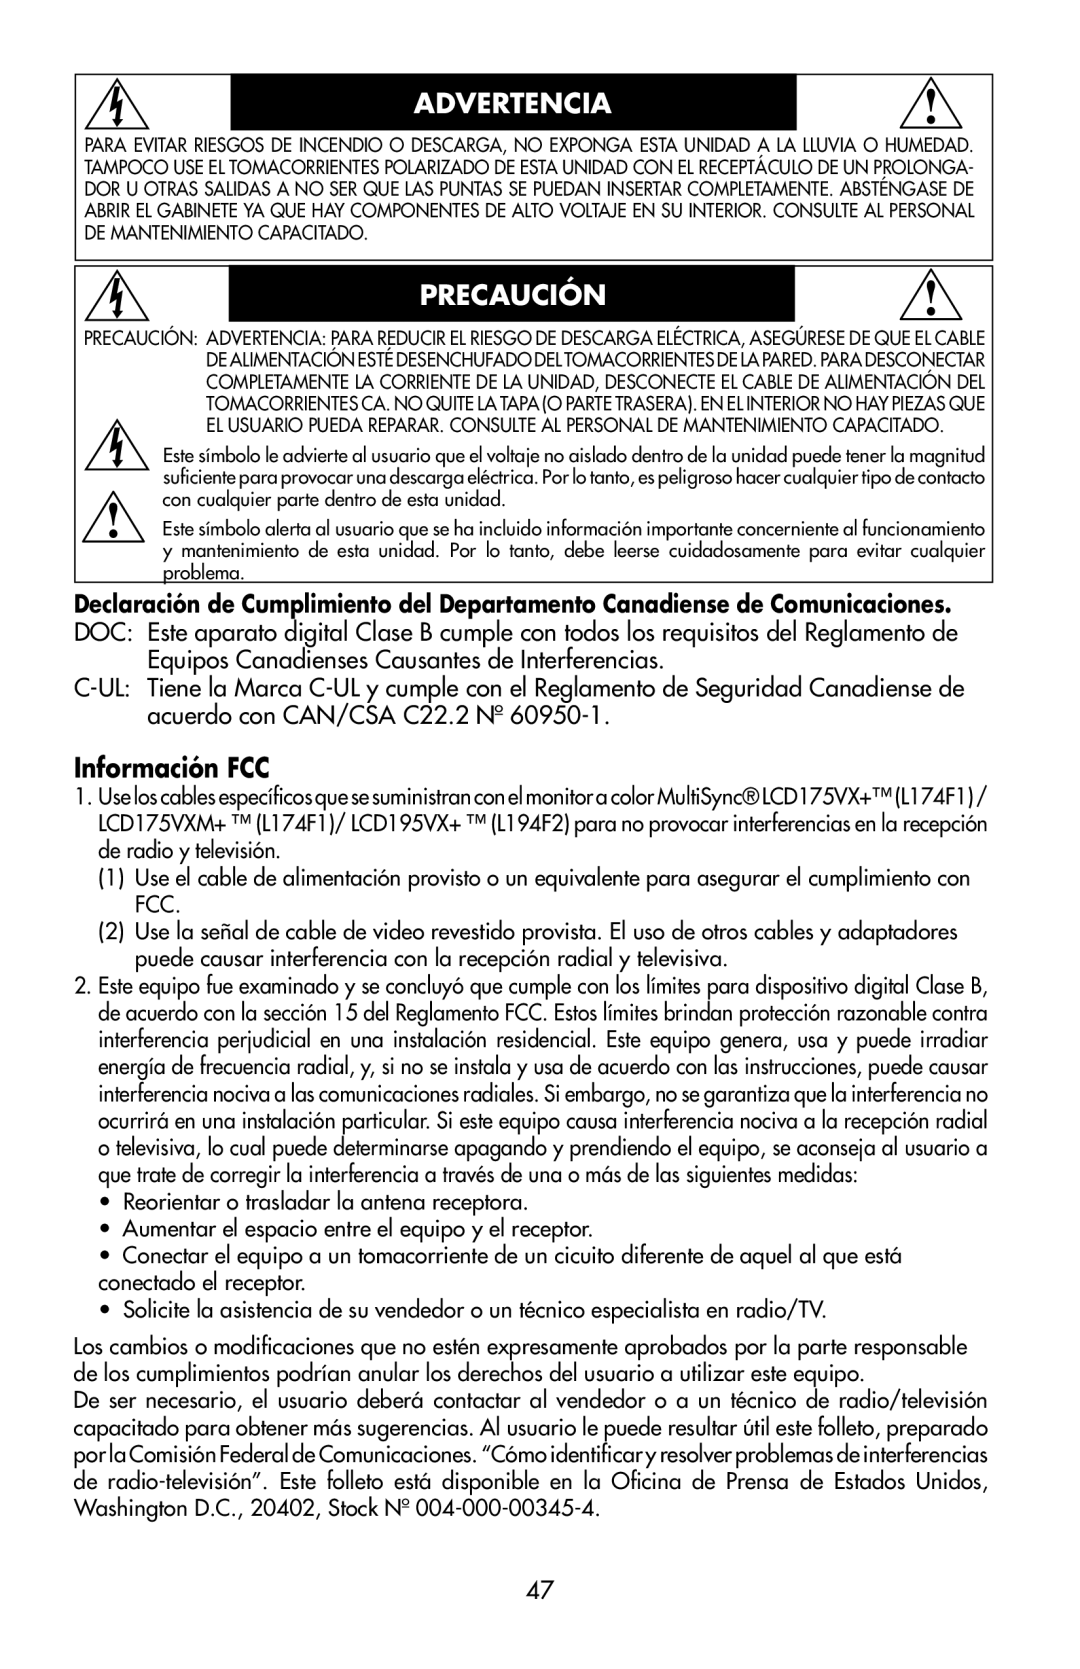 NEC 175VXM user manual Advertencia, Precaución, Información FCC 